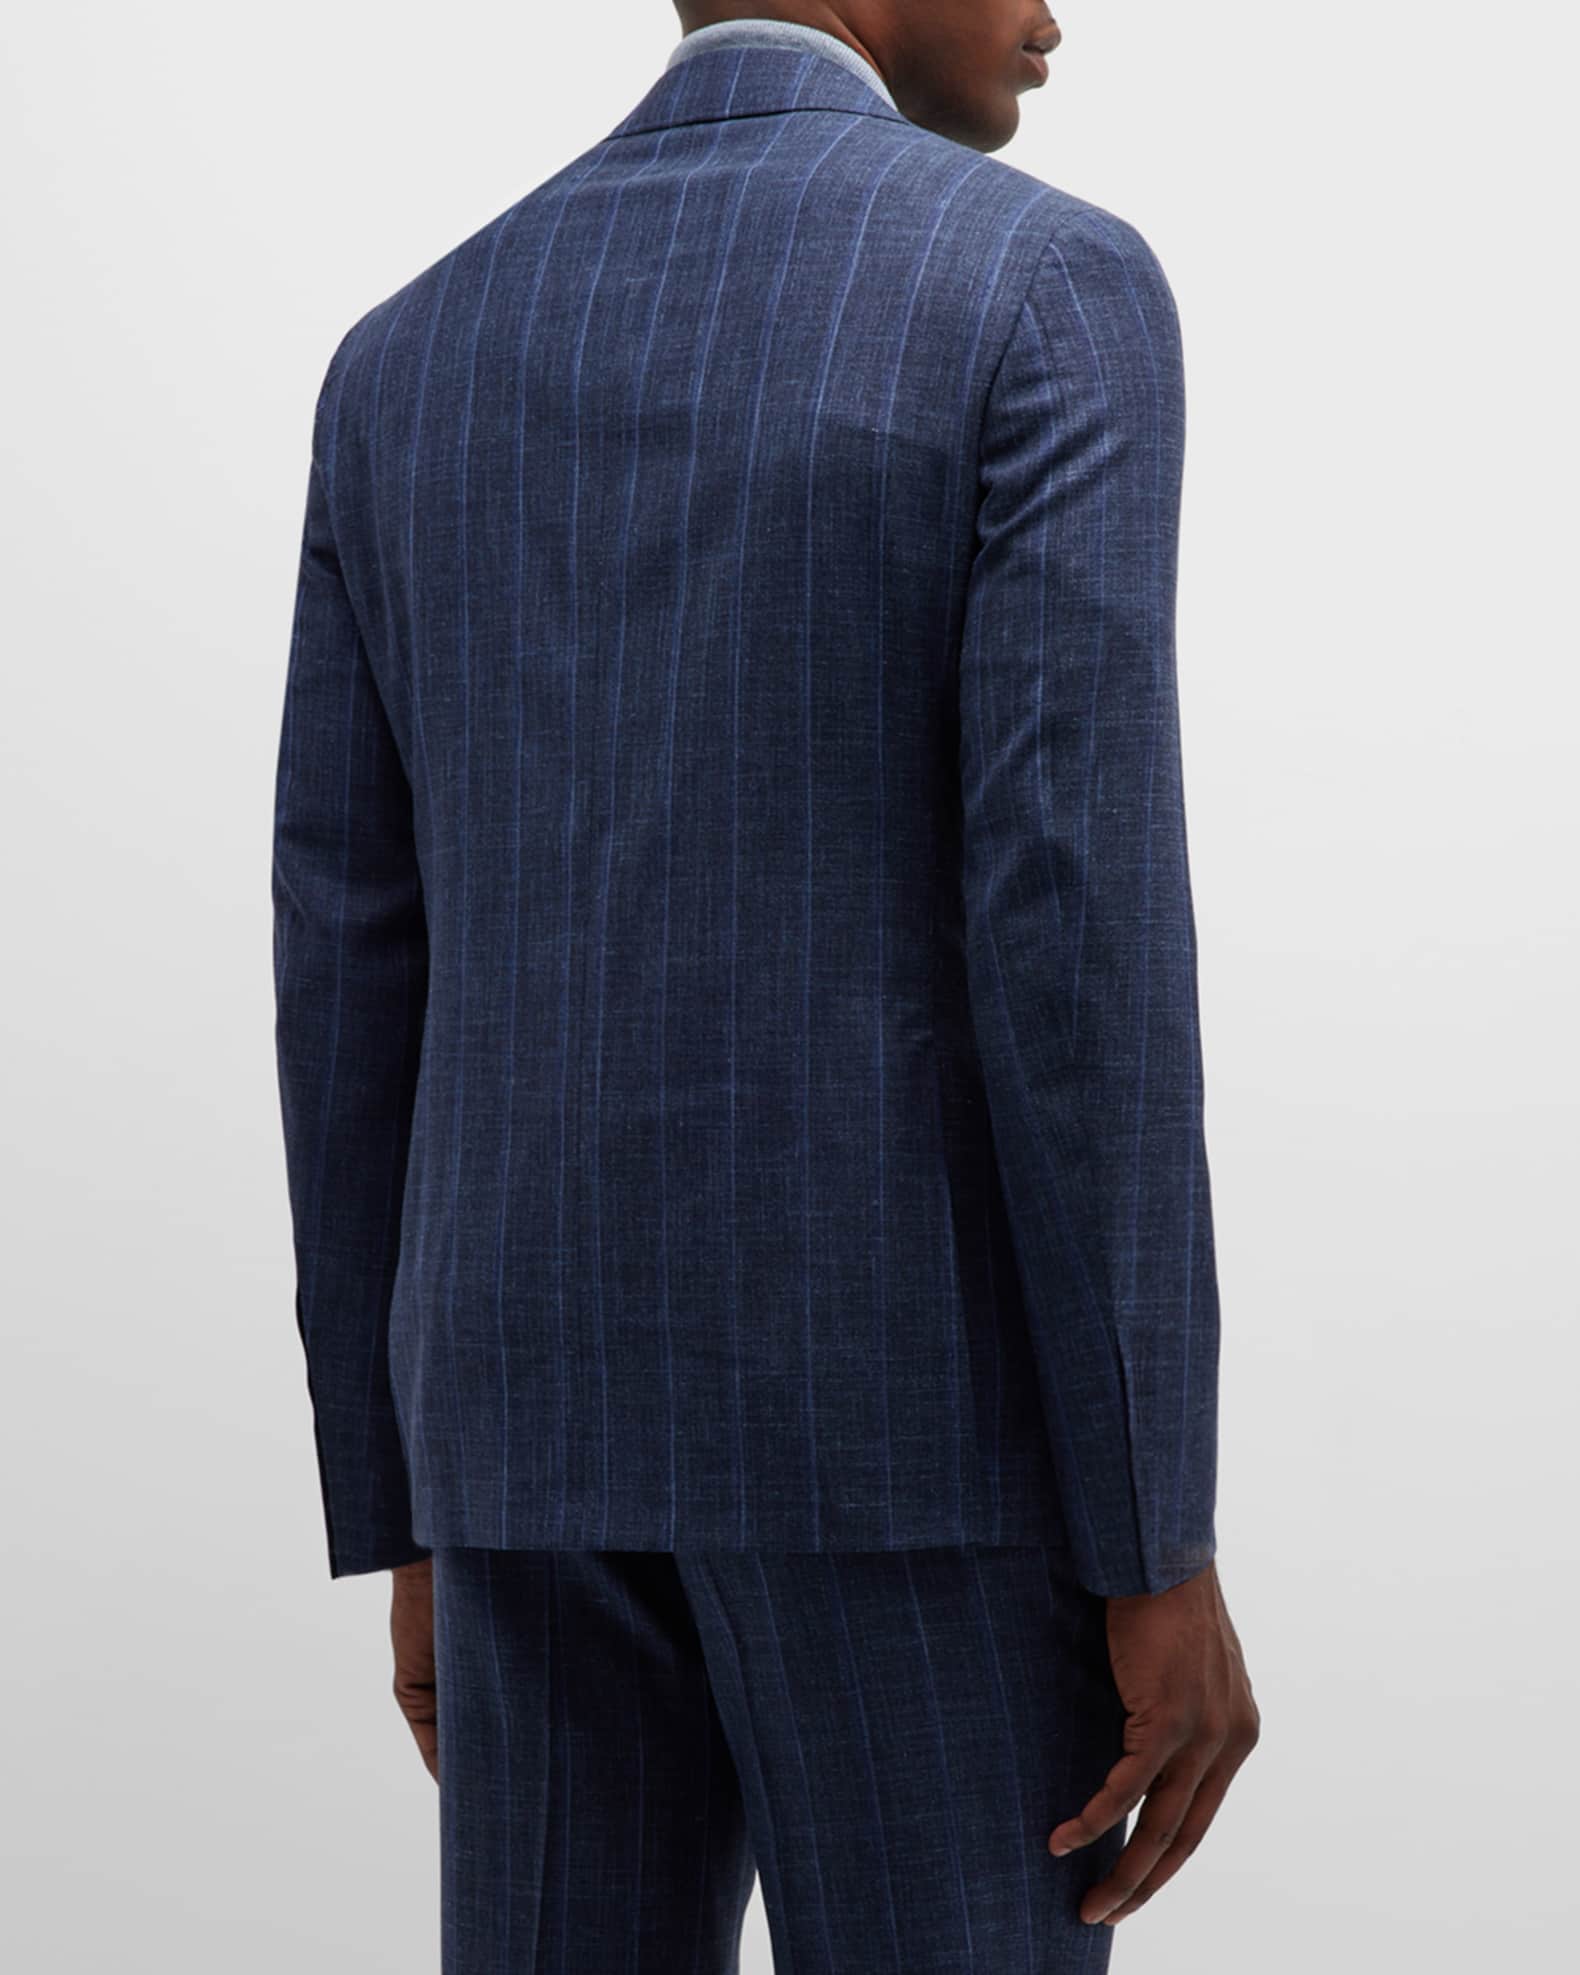 Canali Men's Seasonal Stripe Wool-Blend Suit | Neiman Marcus